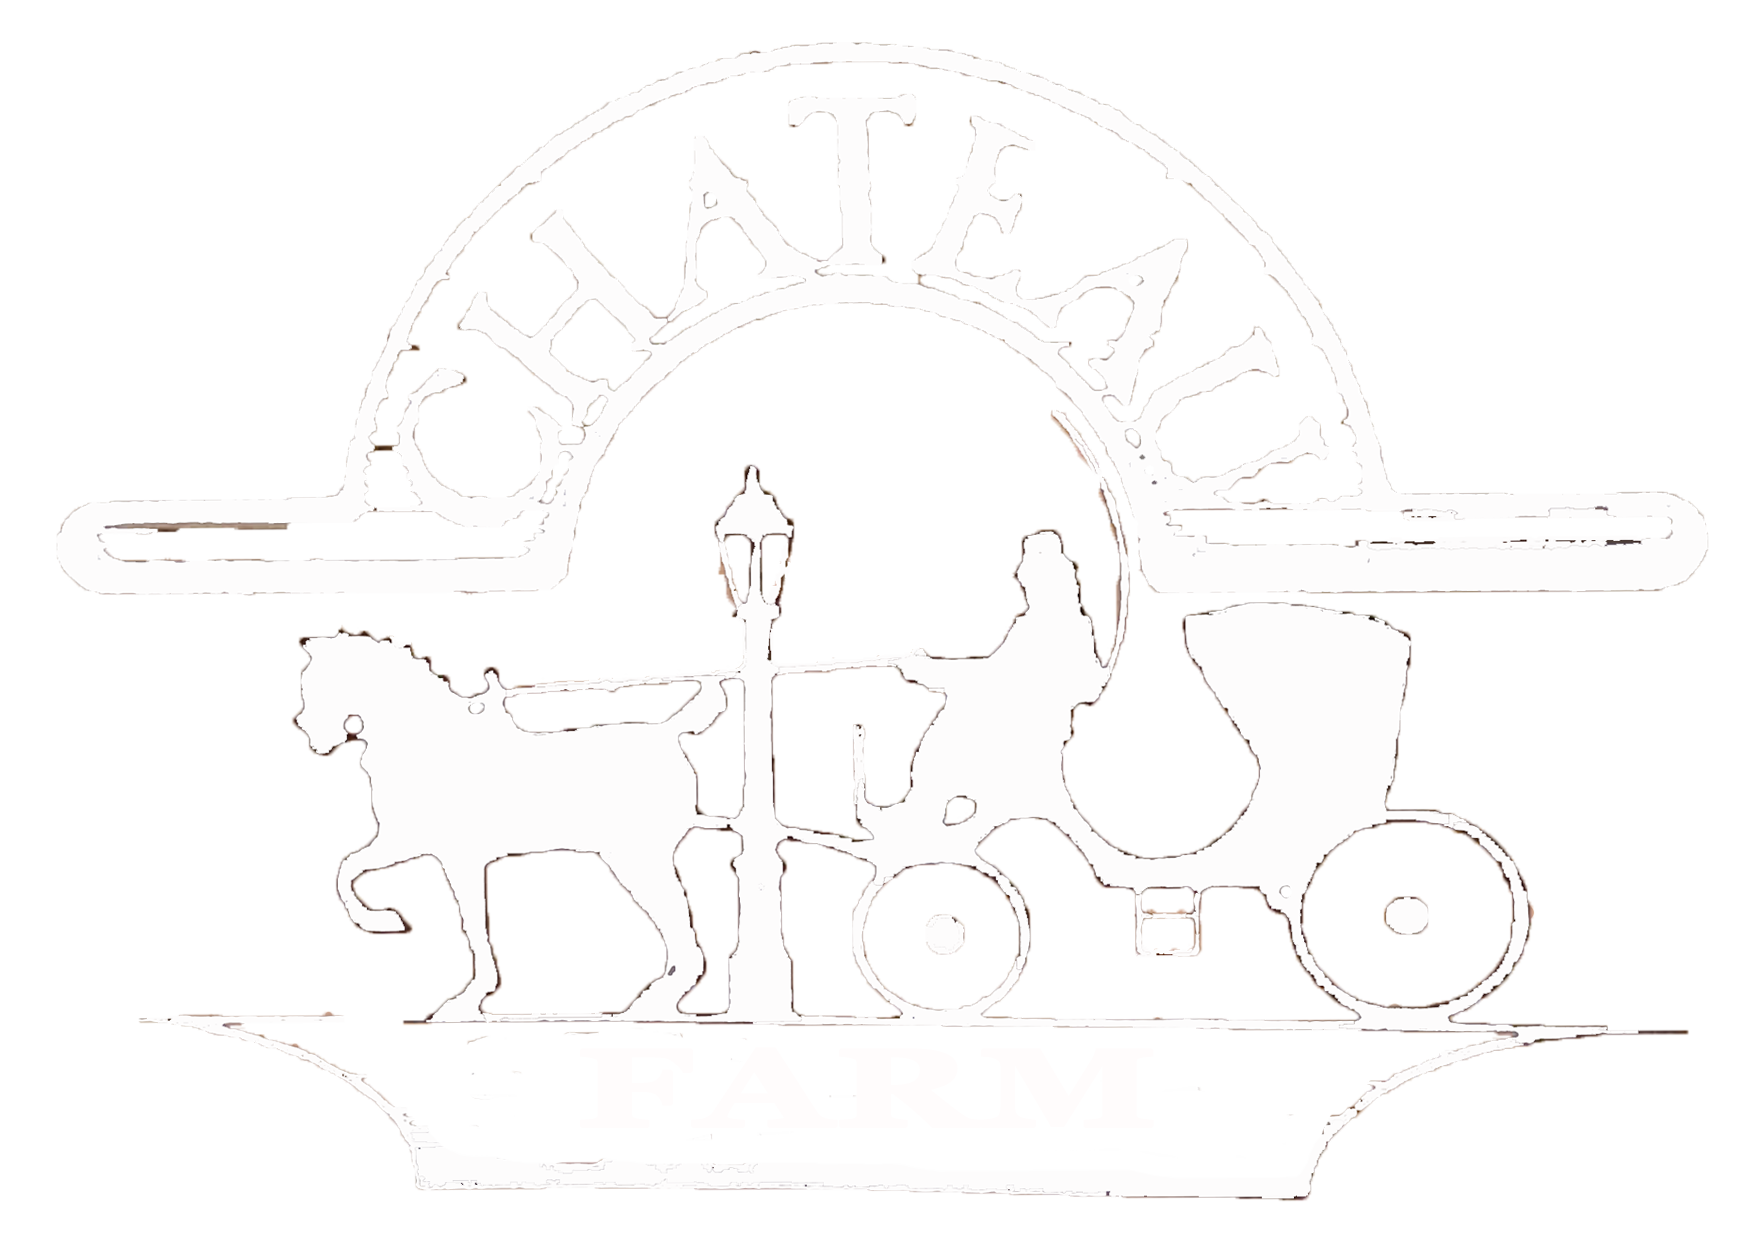 Chateau Farm